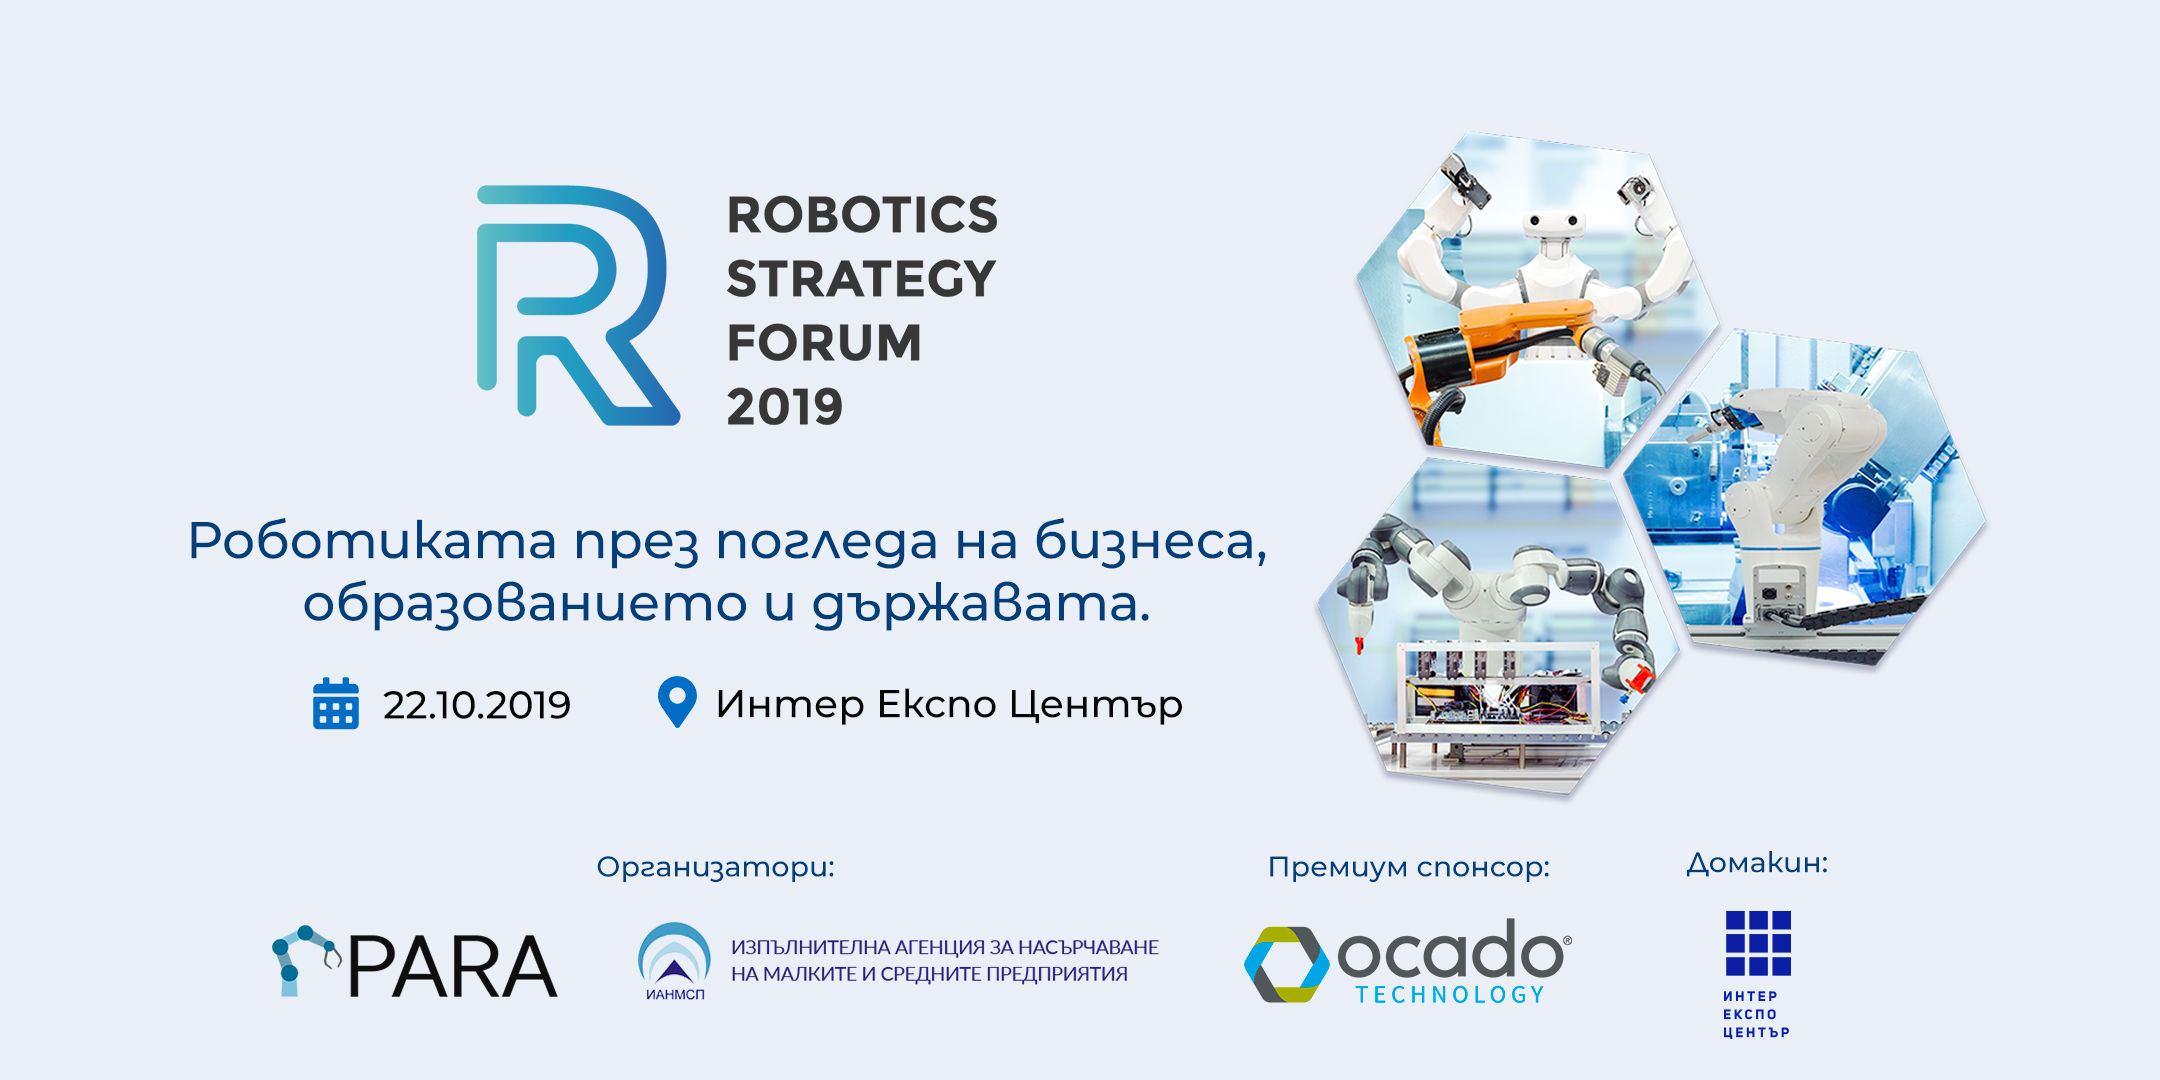 Форум по роботика и автоматизация събира българската технологична екосистема на 22 октомври, в София